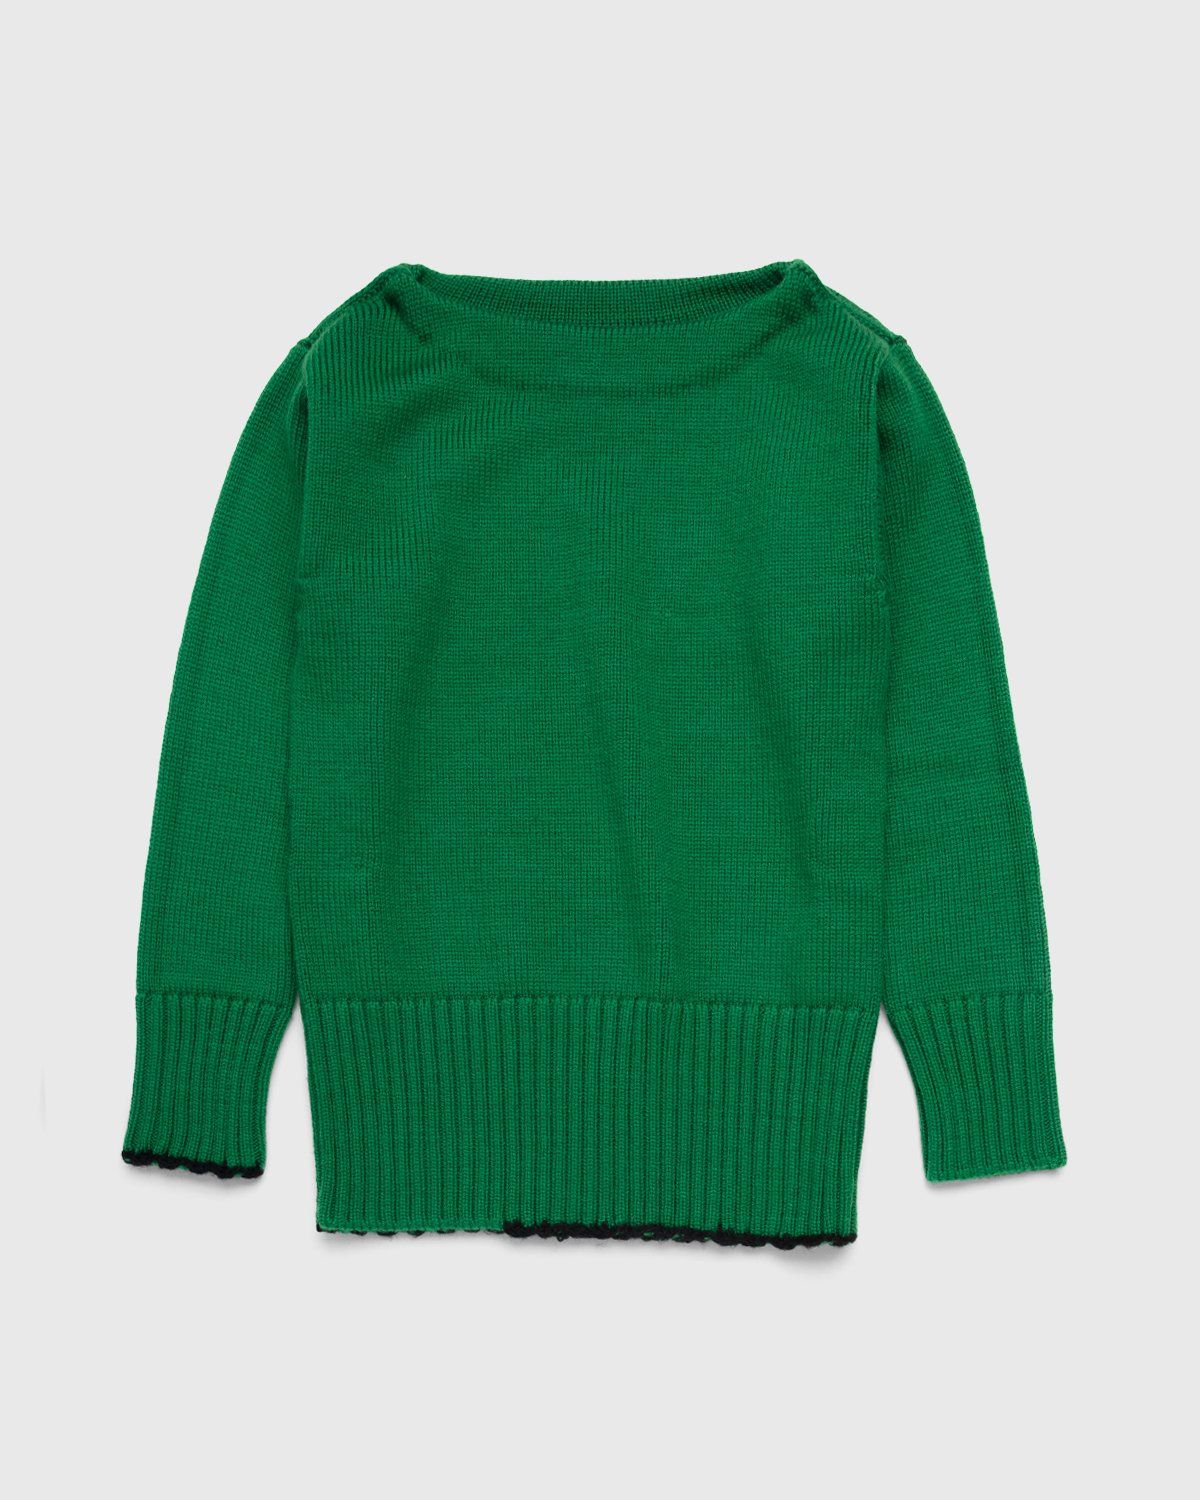 Maison Margiela – Summer Camp Sweater Green